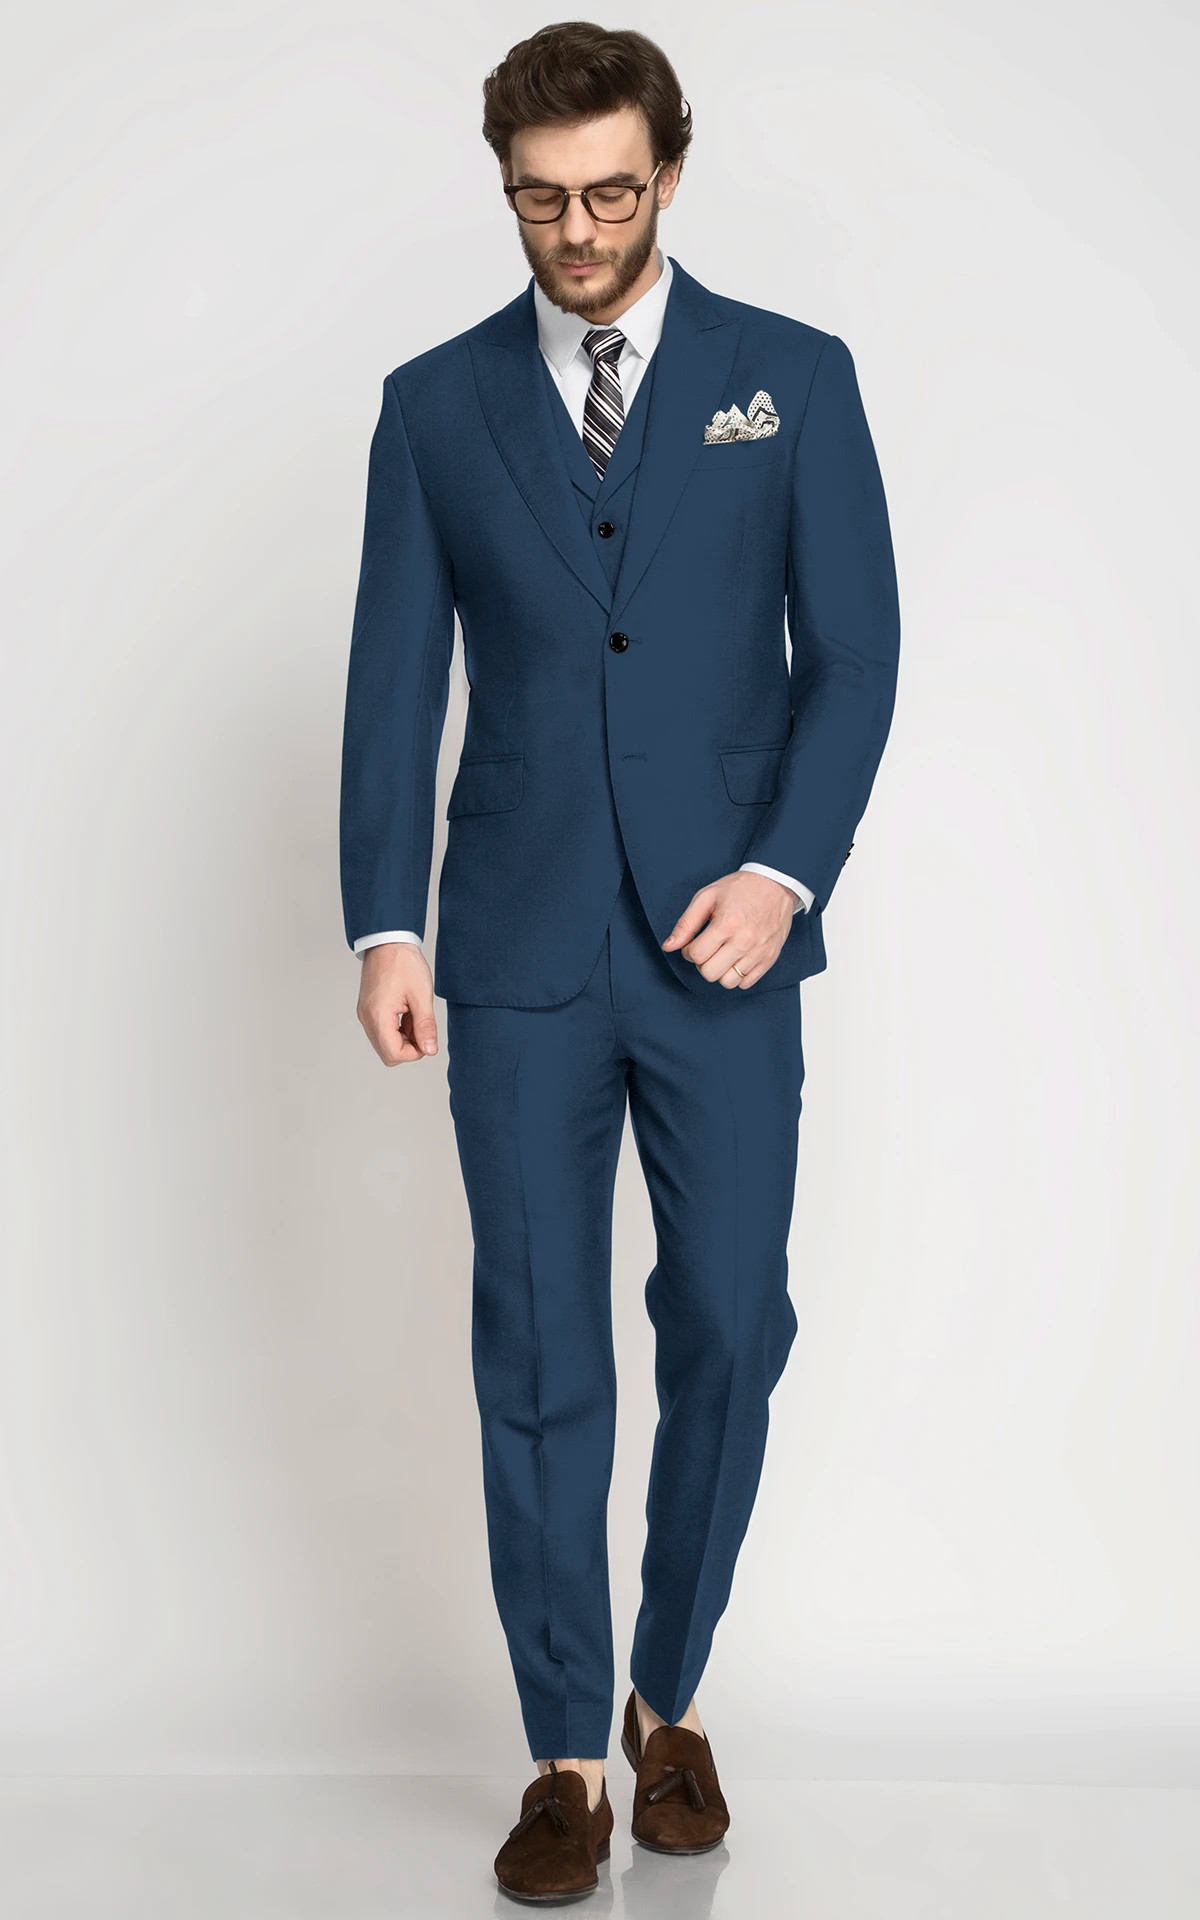 Men's Blue Suit & Tuxedo, Navy Blue Suit